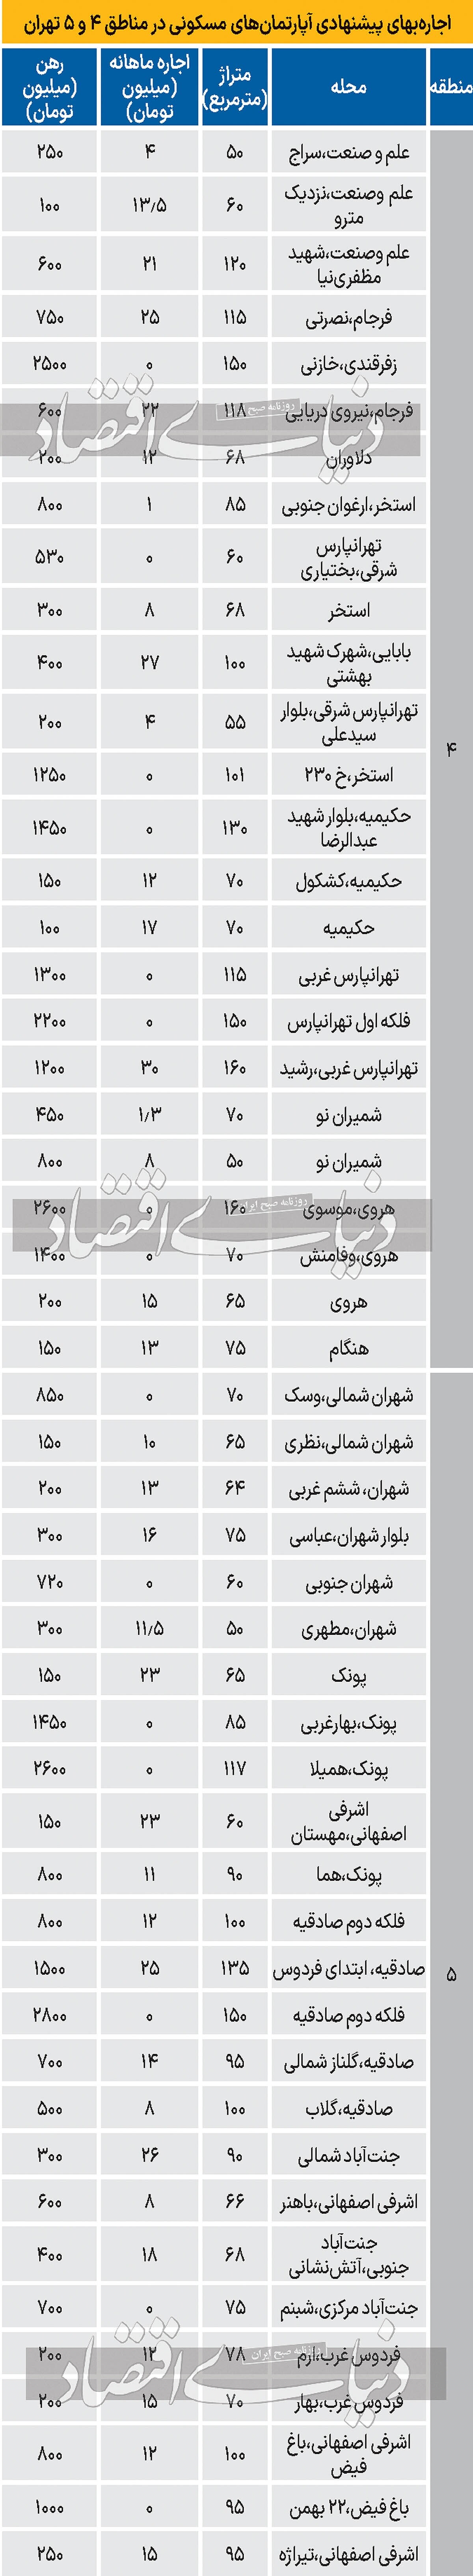 فایل های پیشنهادی برای موجر‌ها در مناطق ۴ و ۵ تهران